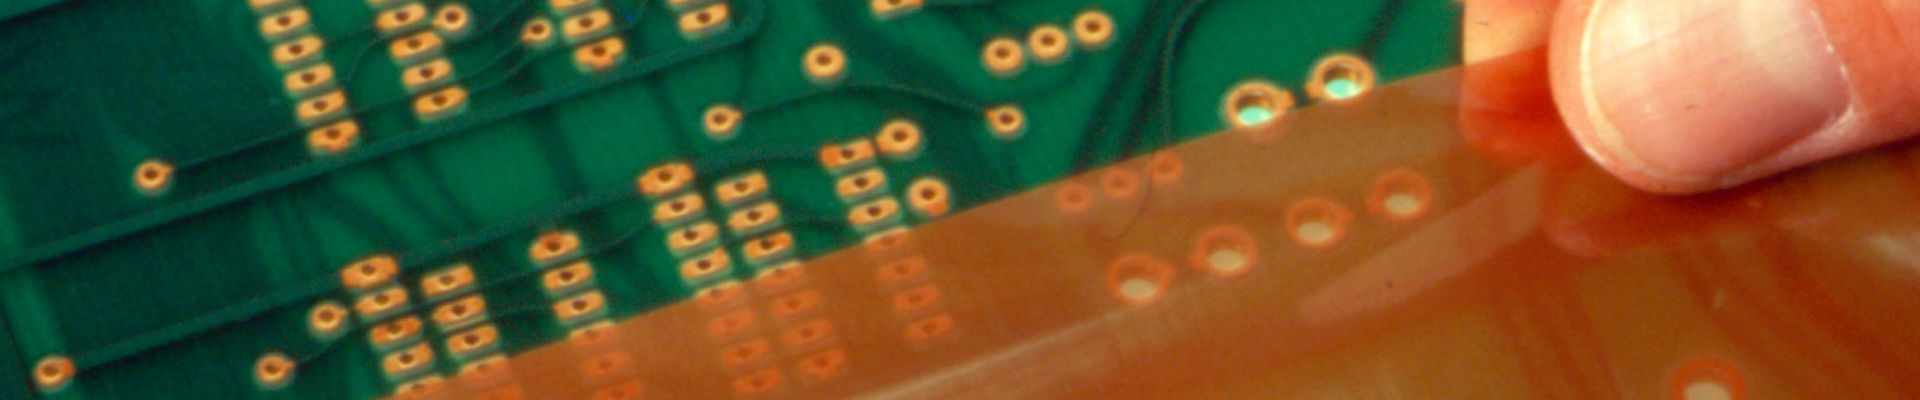 Os dedos do homem aplicam filme de proteção adesivo sensível à pressão em uma placa de circuito eletrônico. 